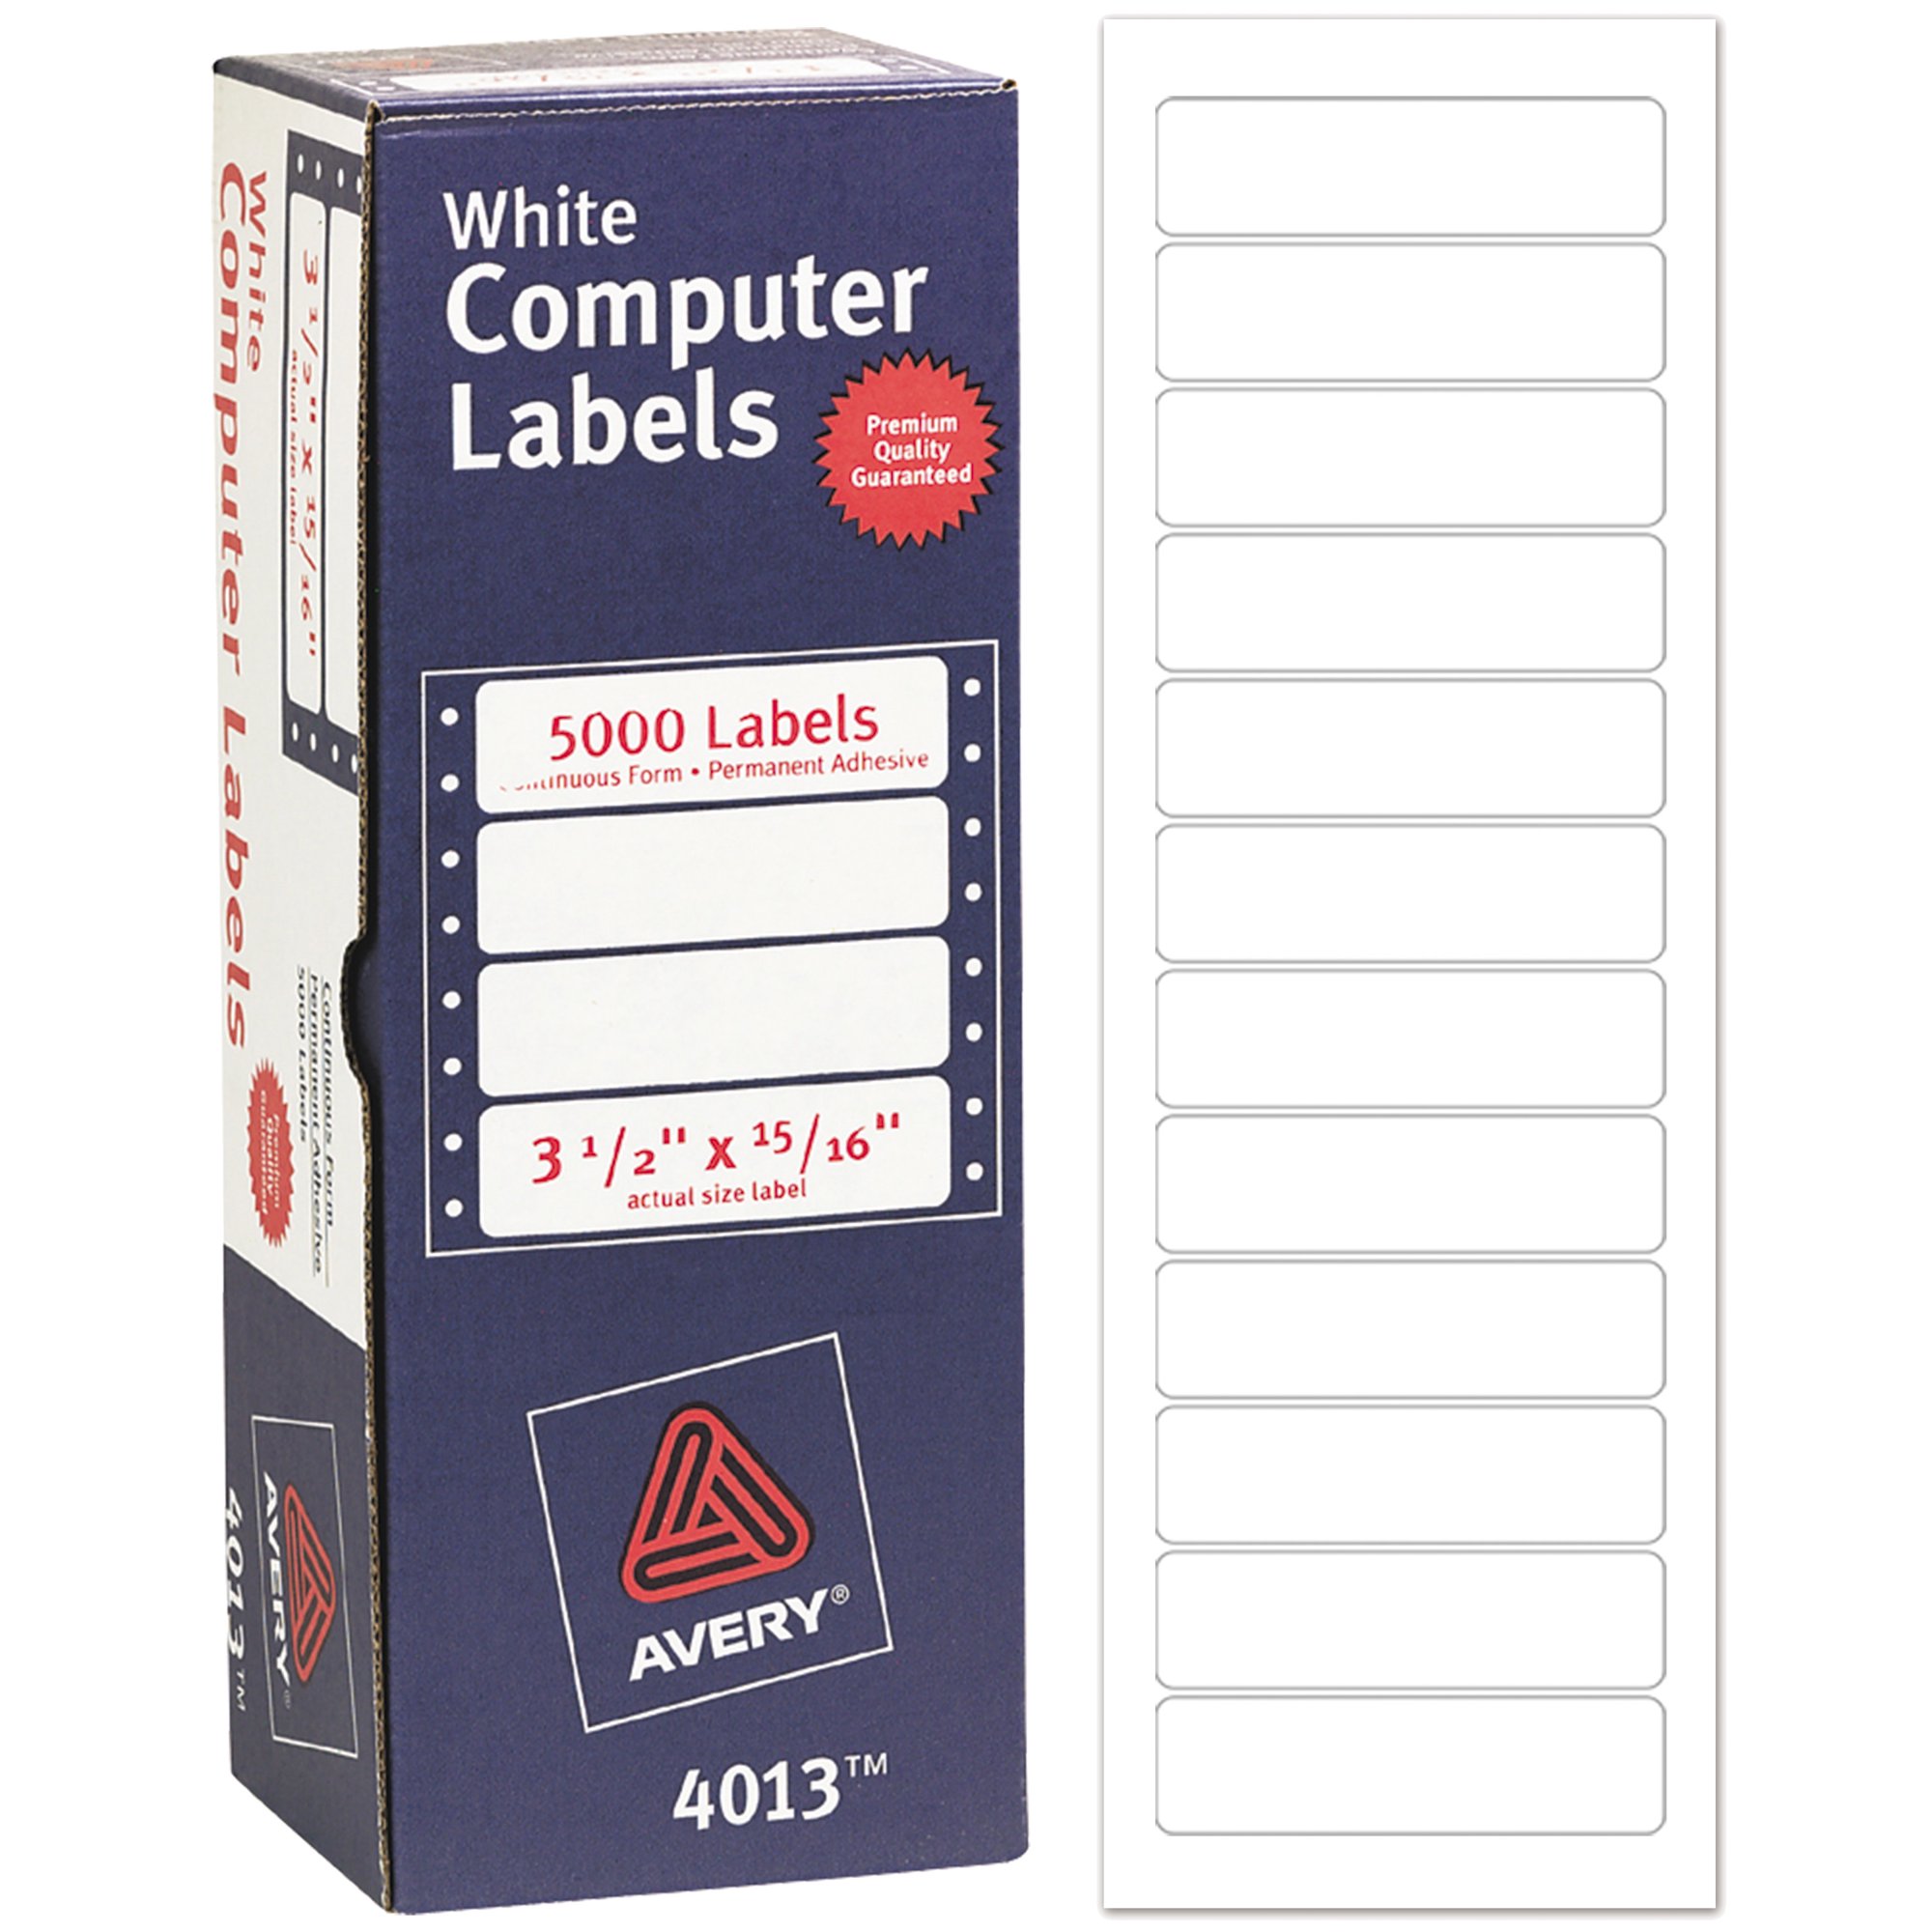 Dot Matrix Printer Address Labels, 15/16" x 3 1/2", 5,000 White Labels (4013)